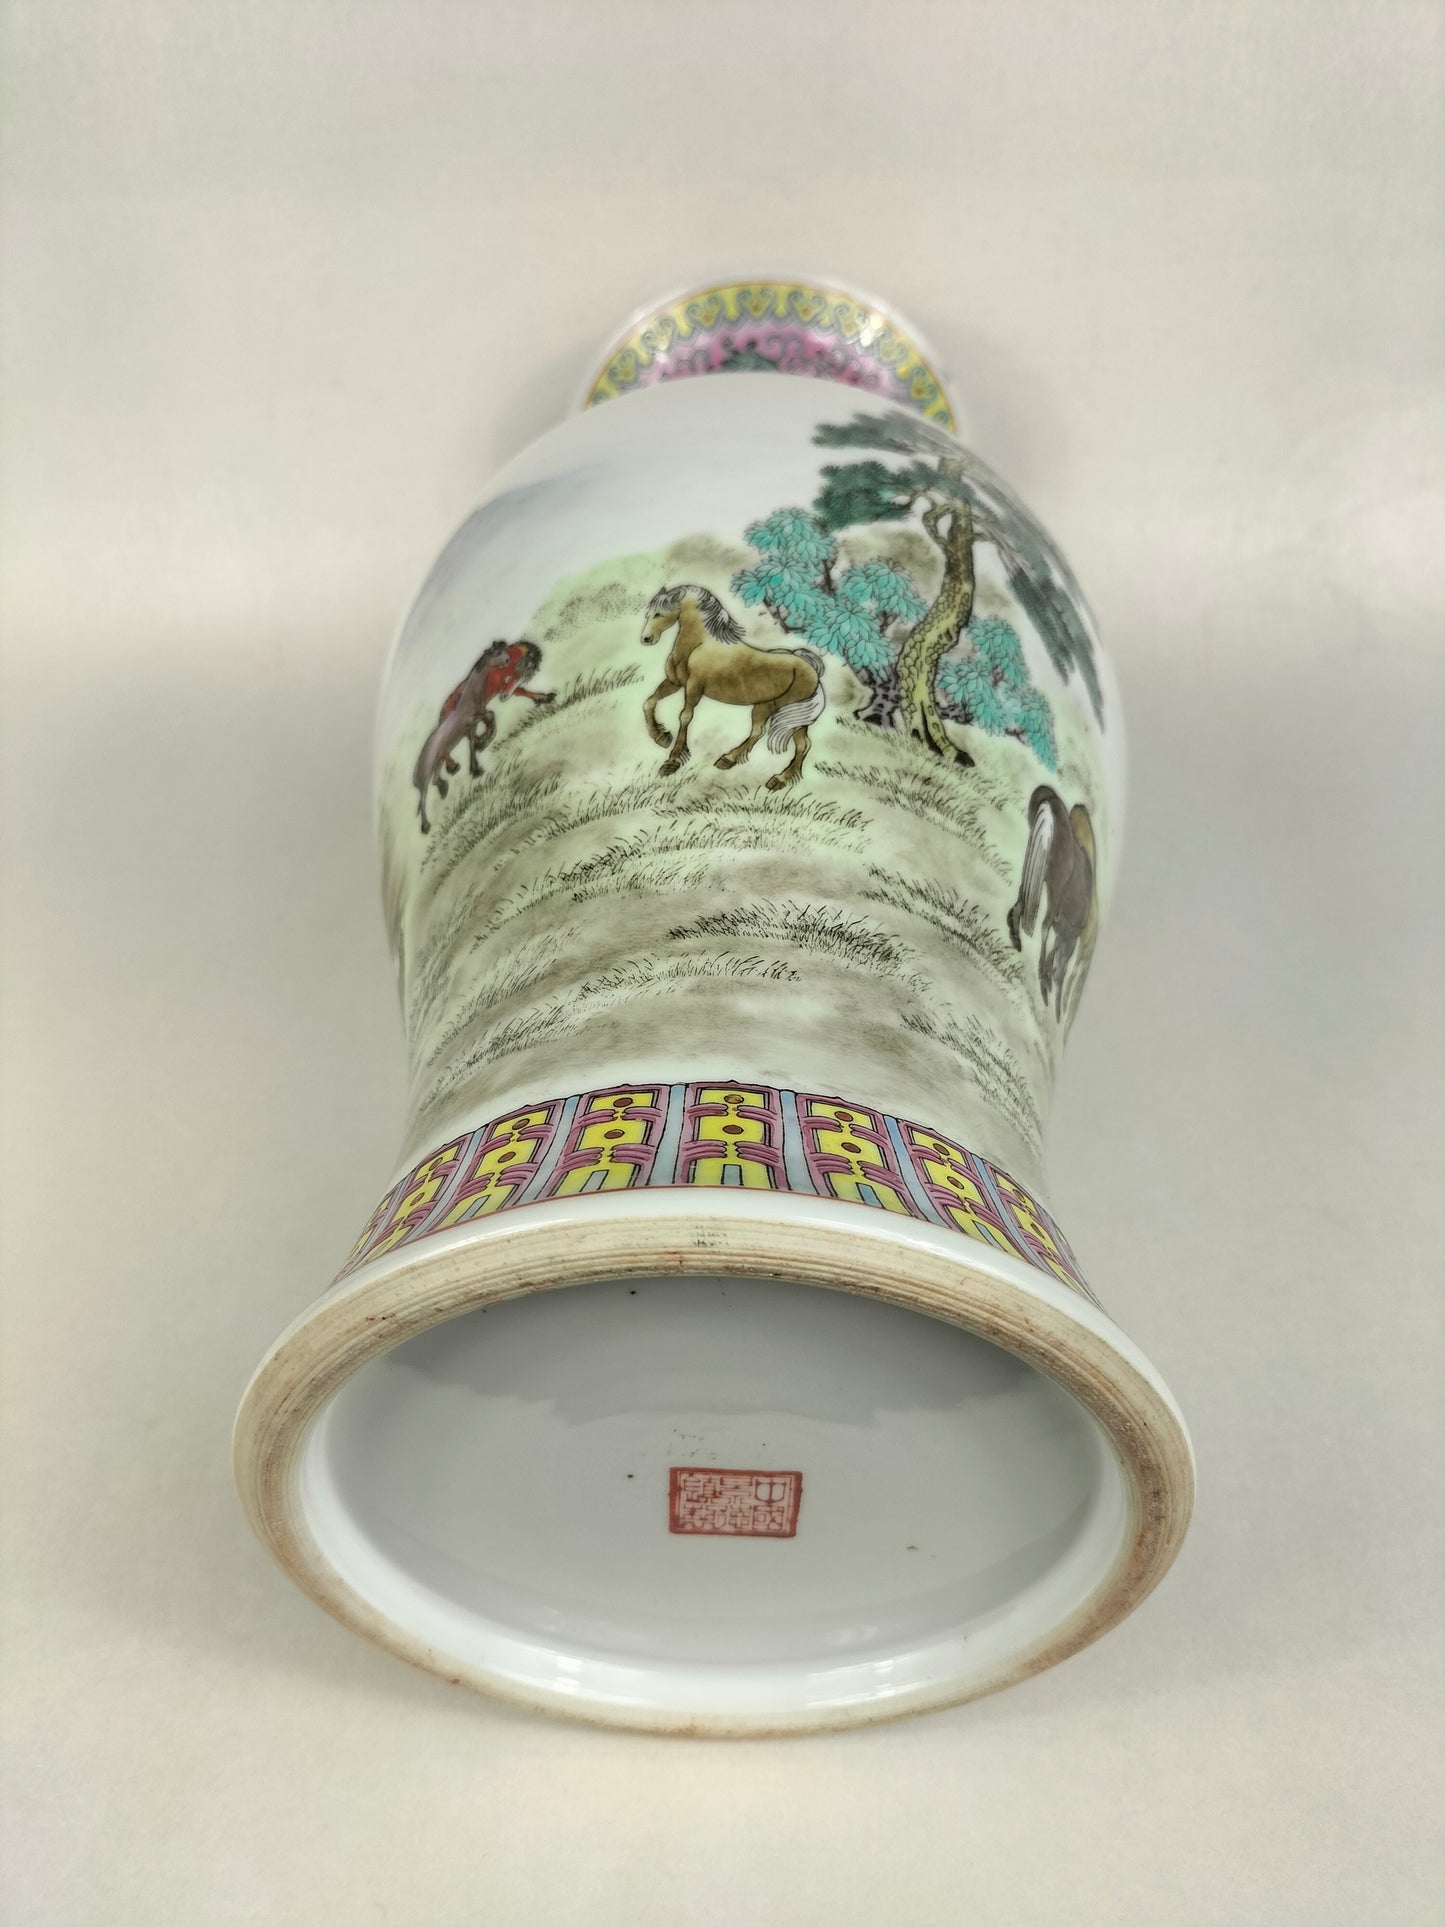 Bình hoa hồng gia đình Trung Quốc được trang trí hình ngựa // Jingdezhen - thế kỷ 20